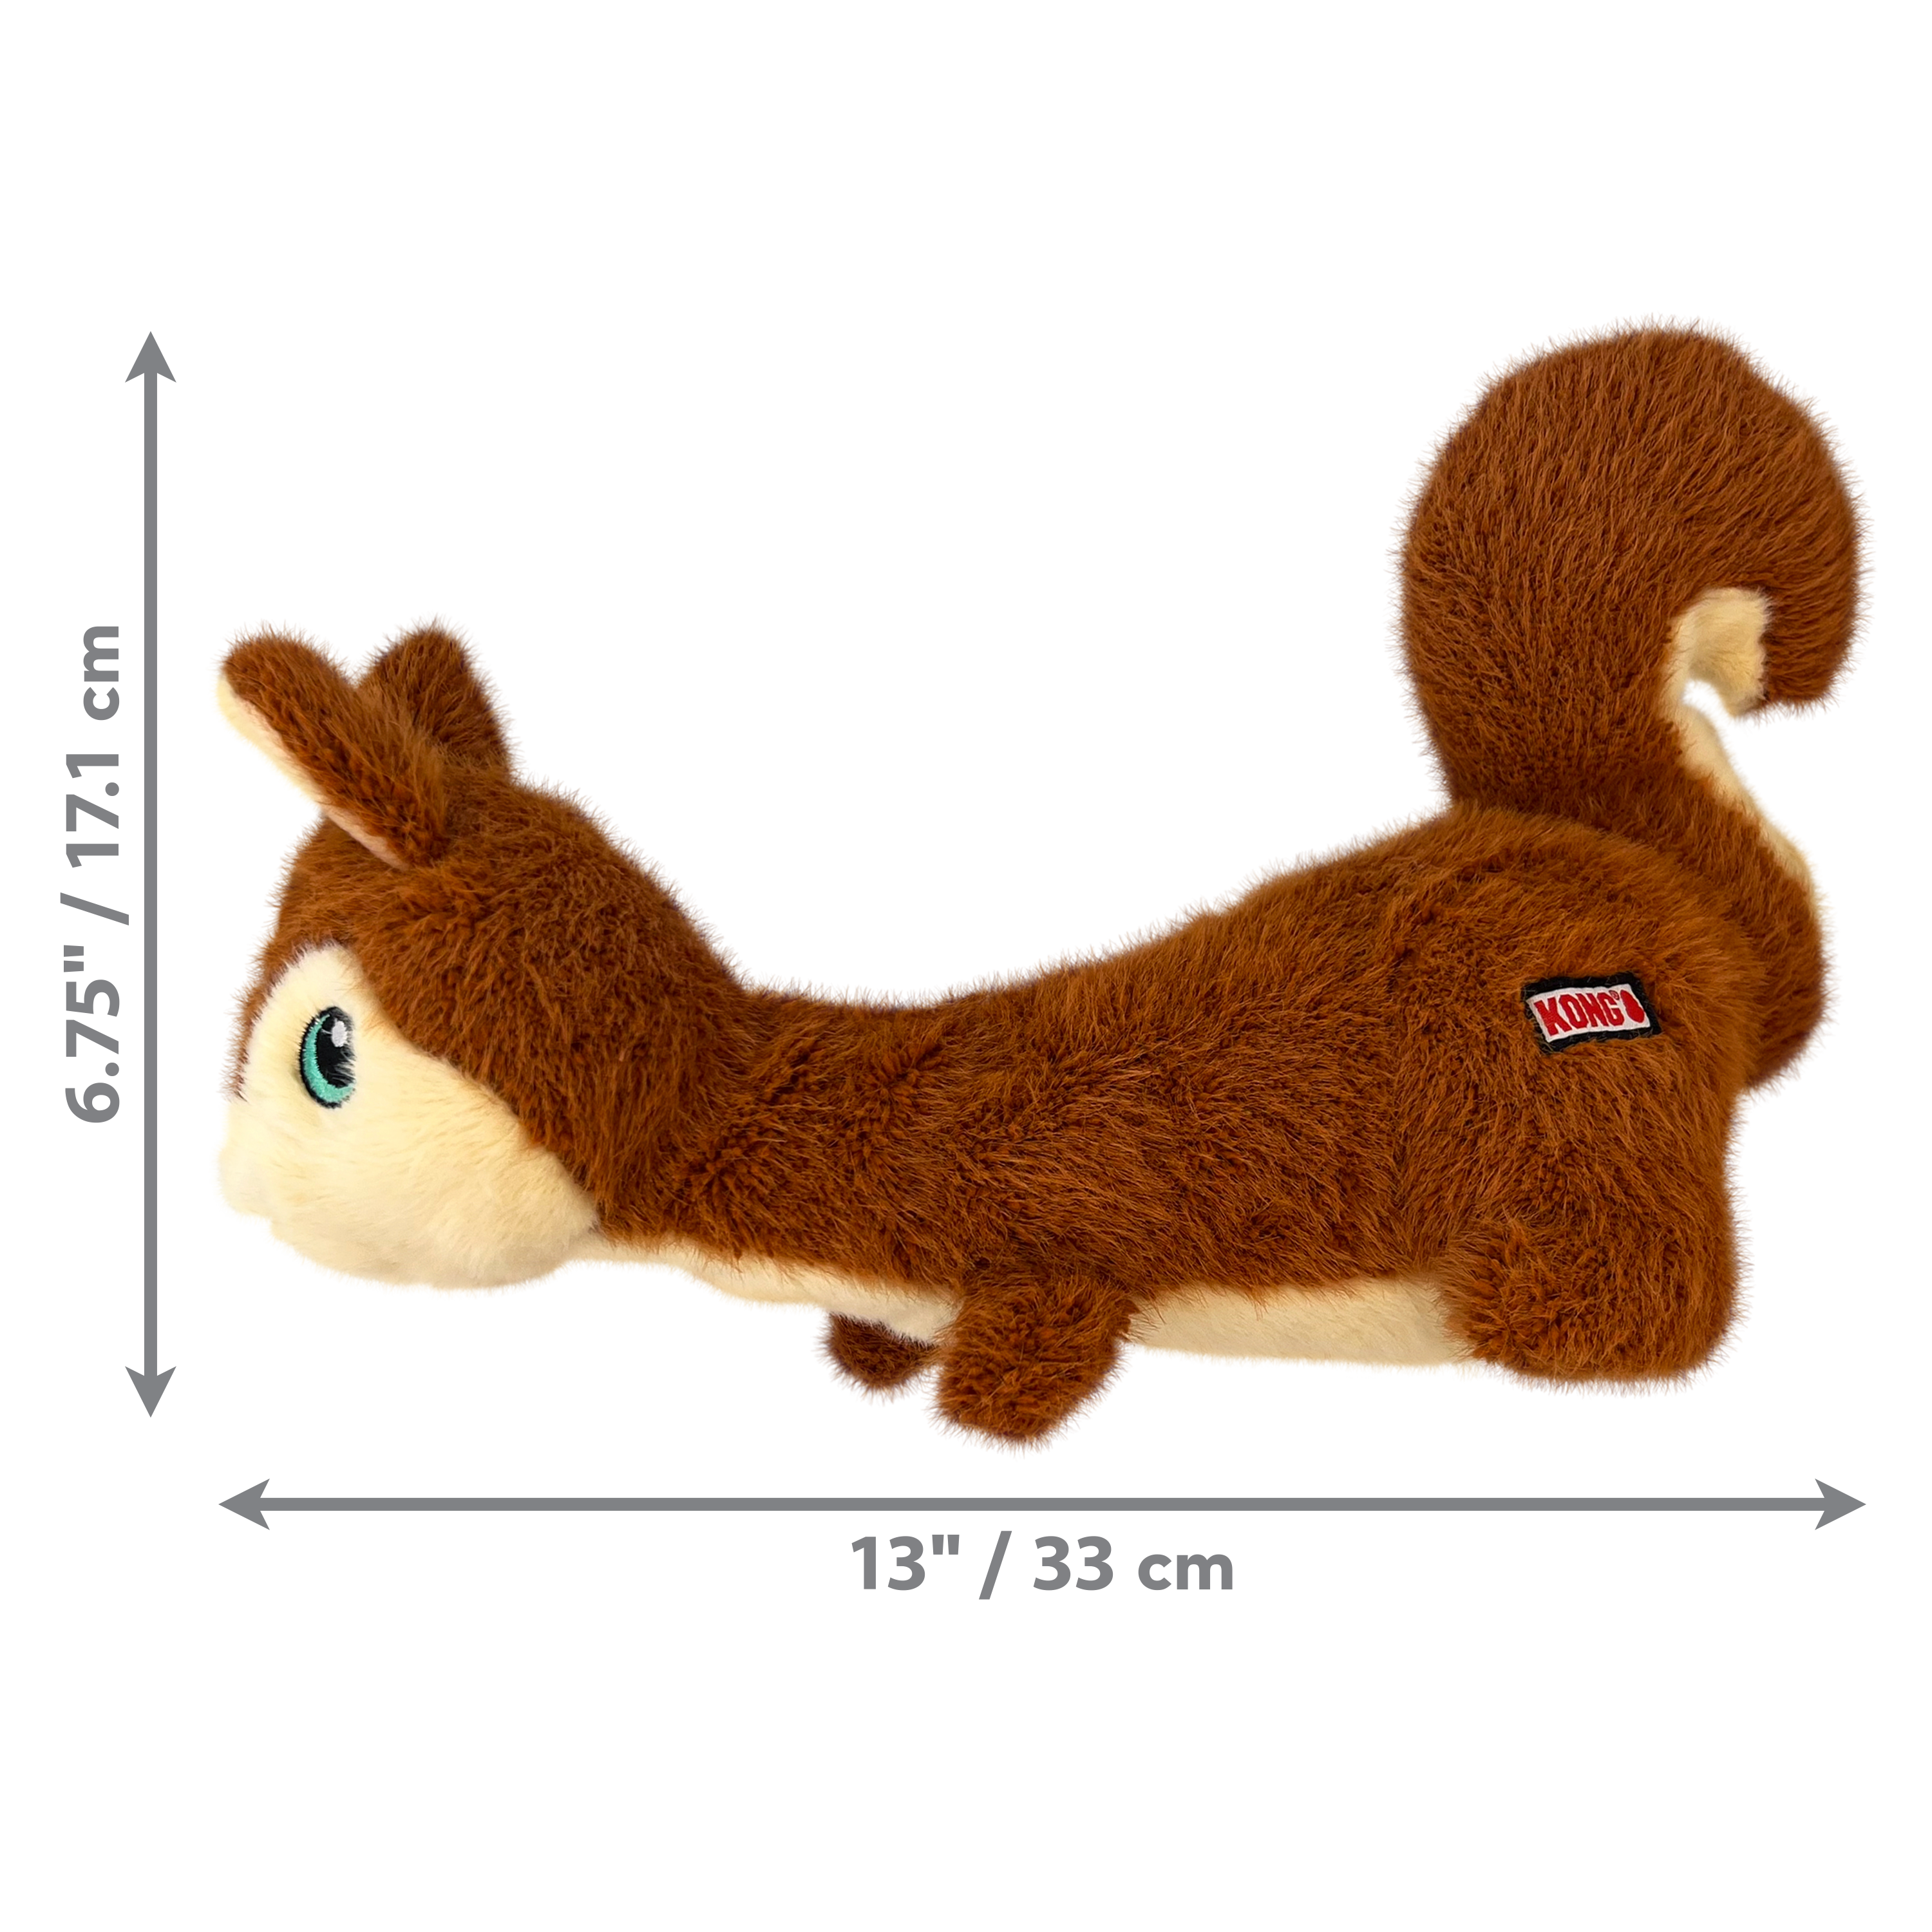 Imagem do produto Scruffs Squirrel dimoffpack